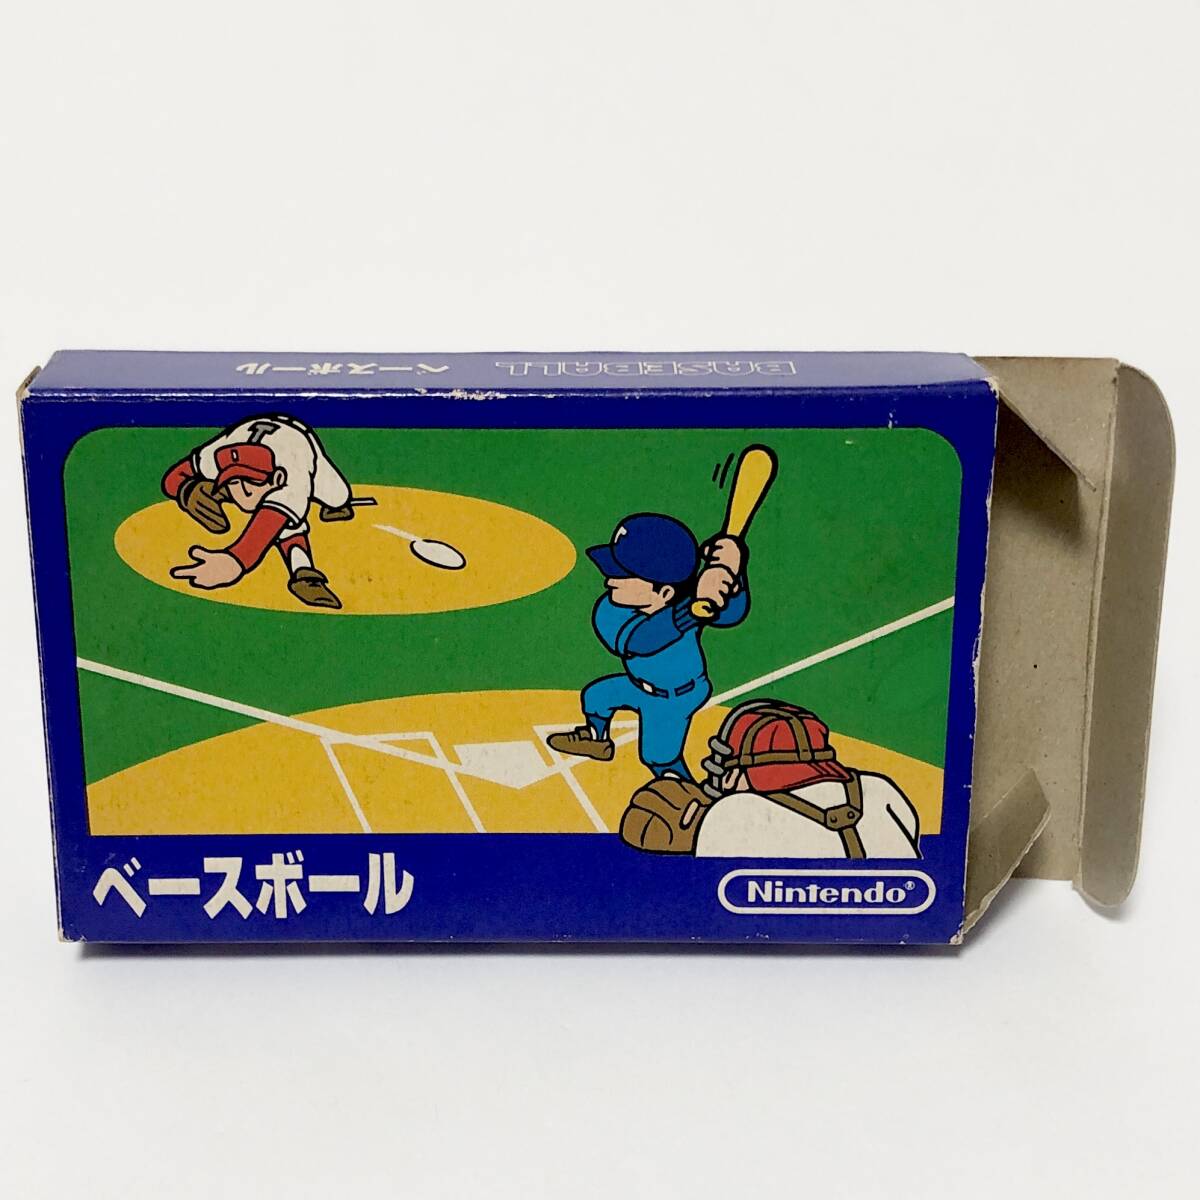 ファミコン ベースボール 小箱版 箱説付き 痛みあり 操作法早見図付き Nintendo Famicom Baseball Small Box Version CIB Testedの画像2